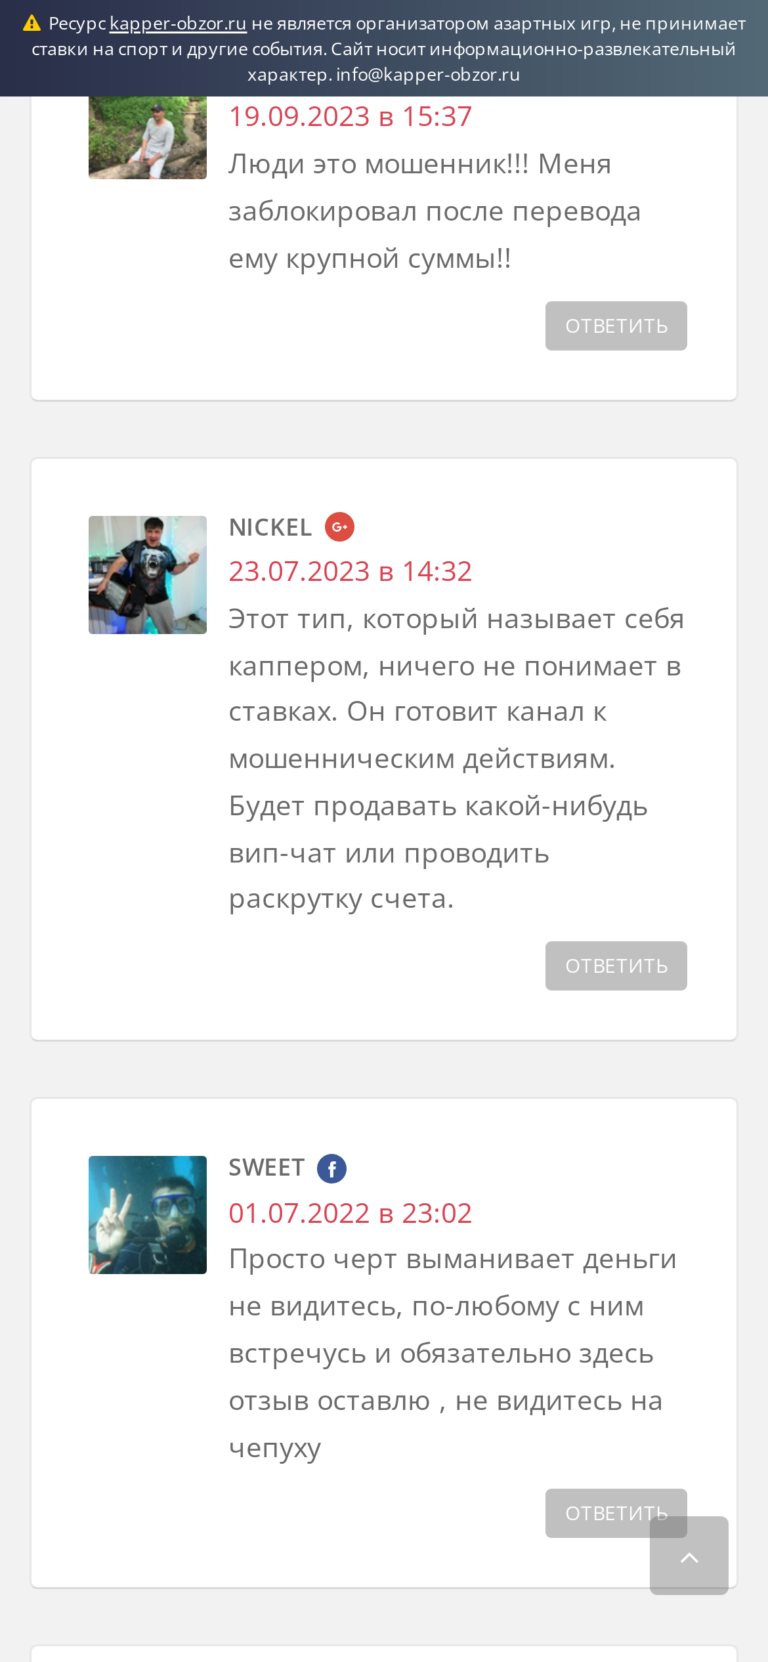 Lbets.ru реальные отзывы